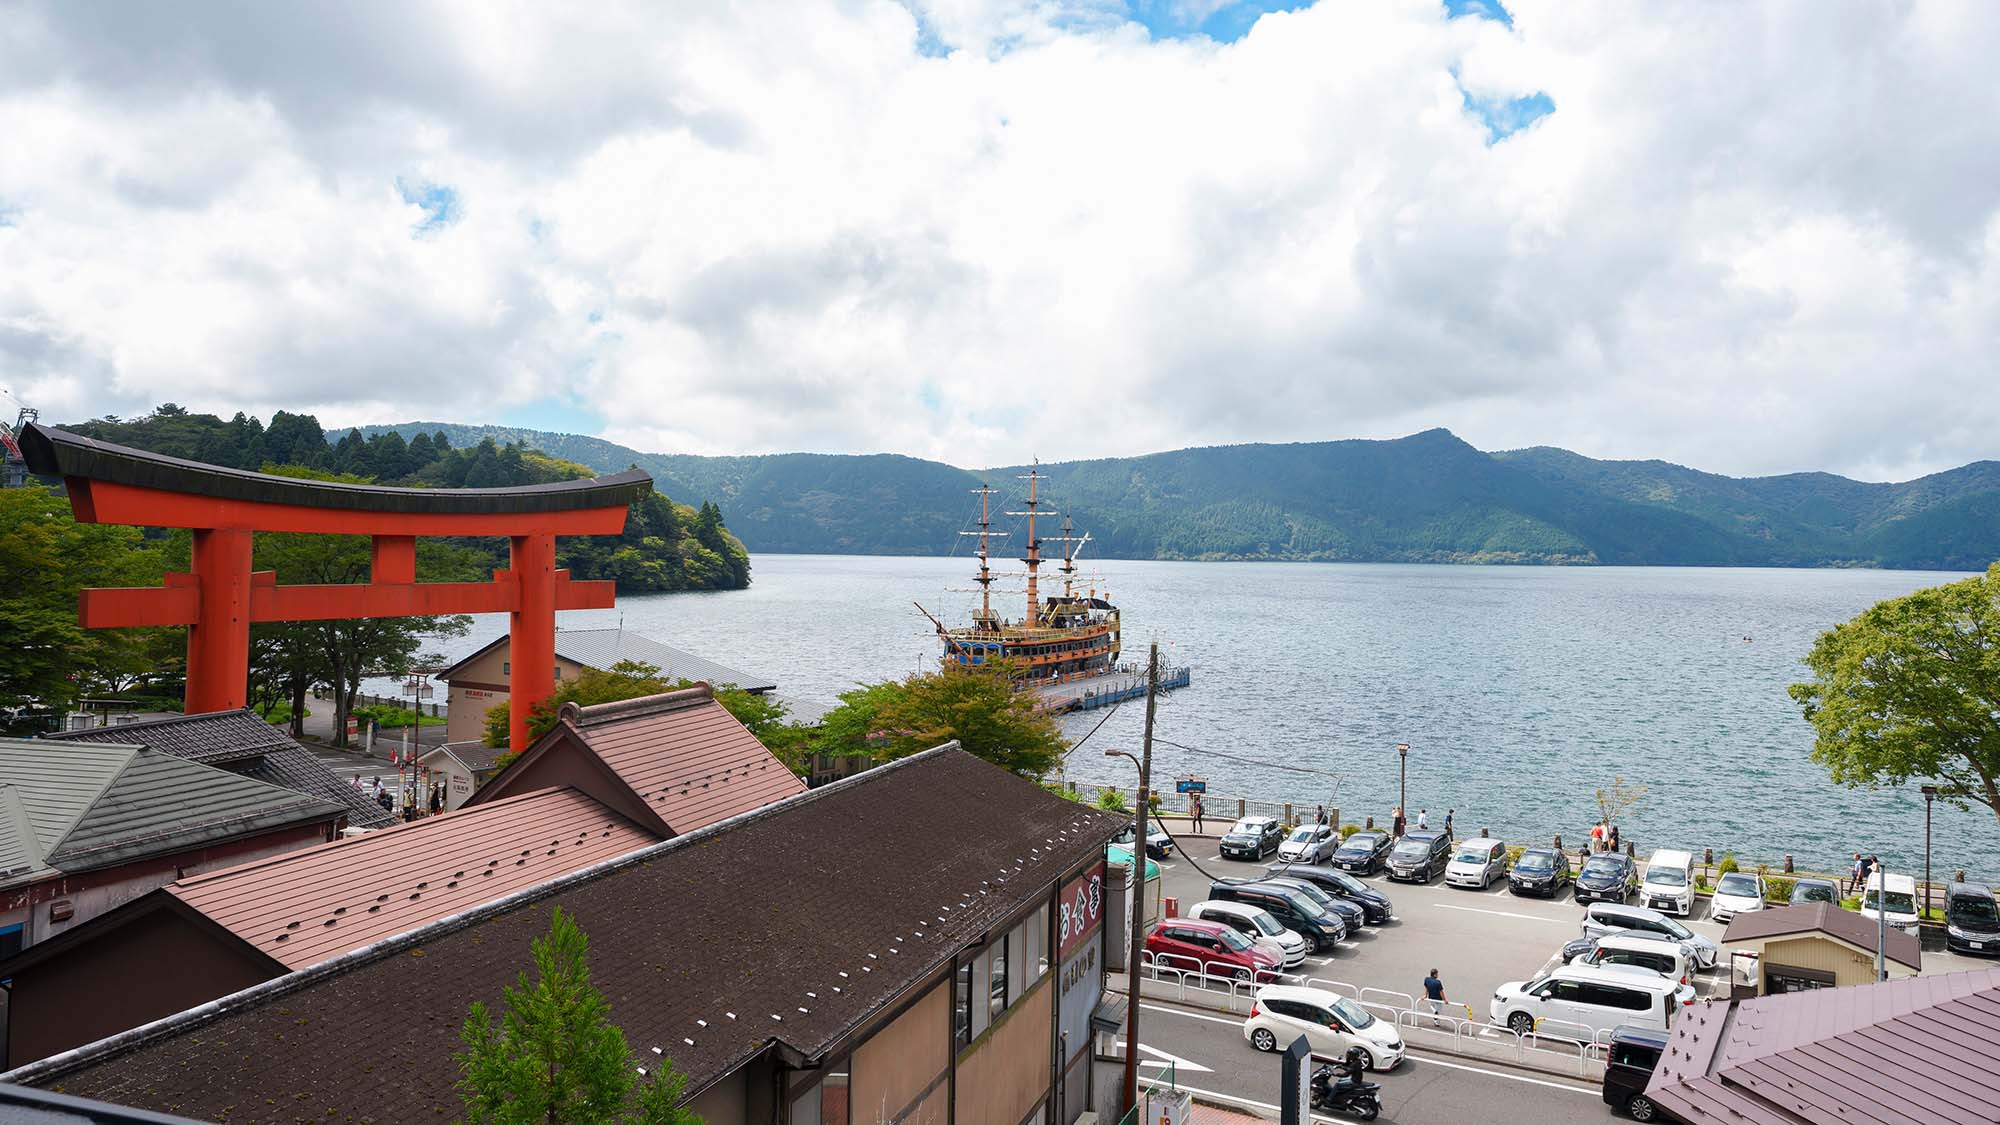 ・【風景】芦ノ湖遊覧と言えば箱根海賊船。宿からもご覧いただけます